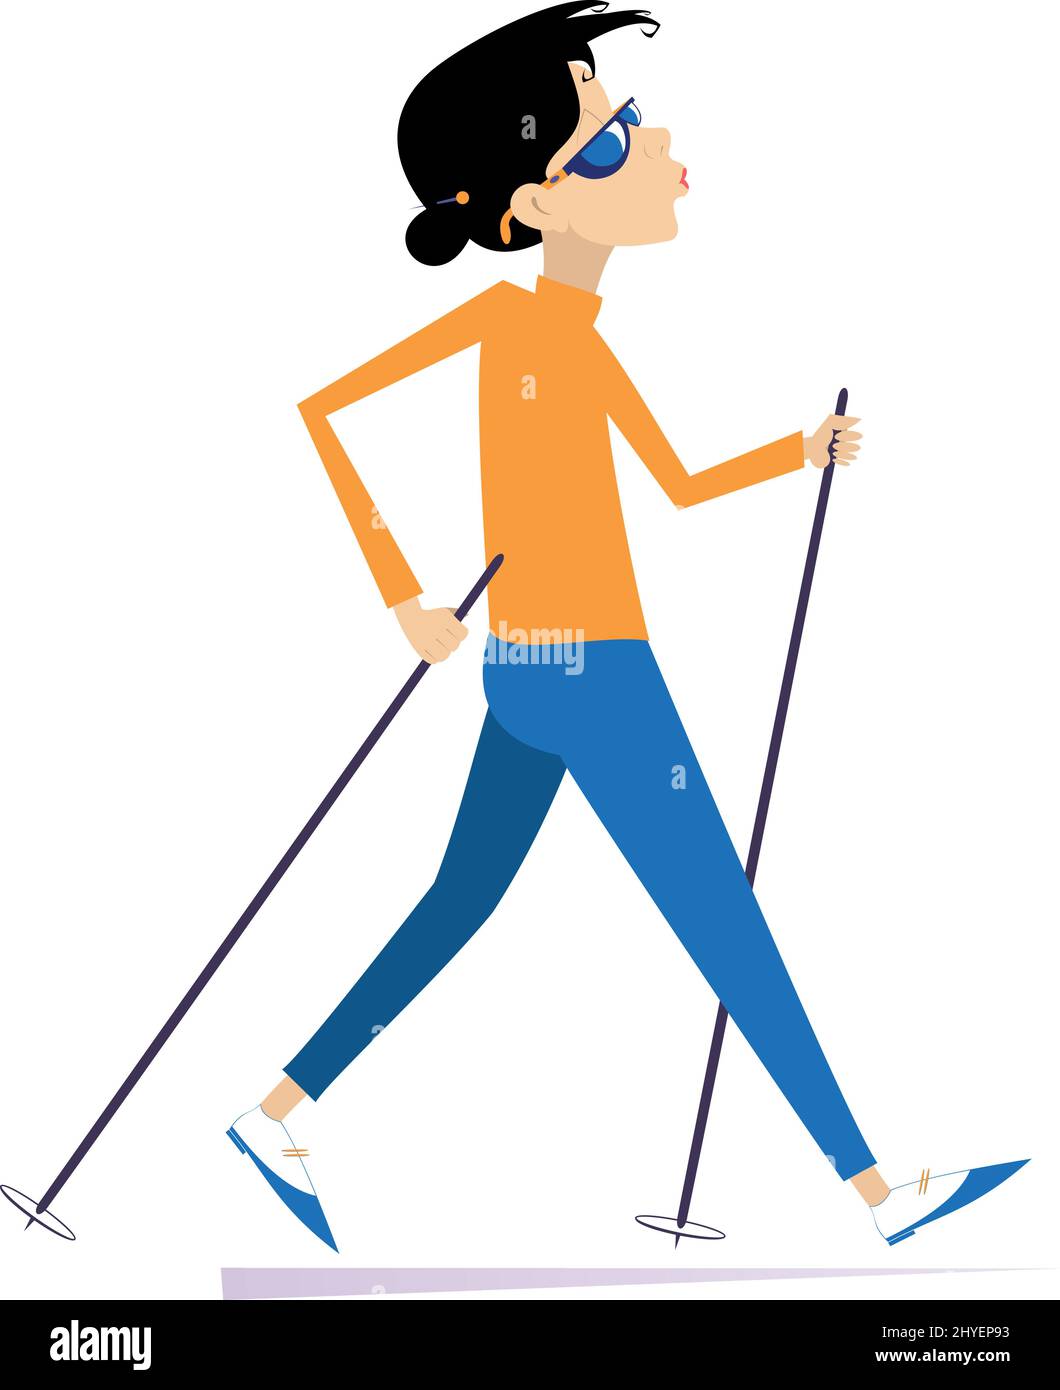 Femme joyeuse faisant l'illustration de marche nordique. Femme à manches  longues orange et pantalon bleu faisant Nordic Walk à l'extérieur isolé  Image Vectorielle Stock - Alamy